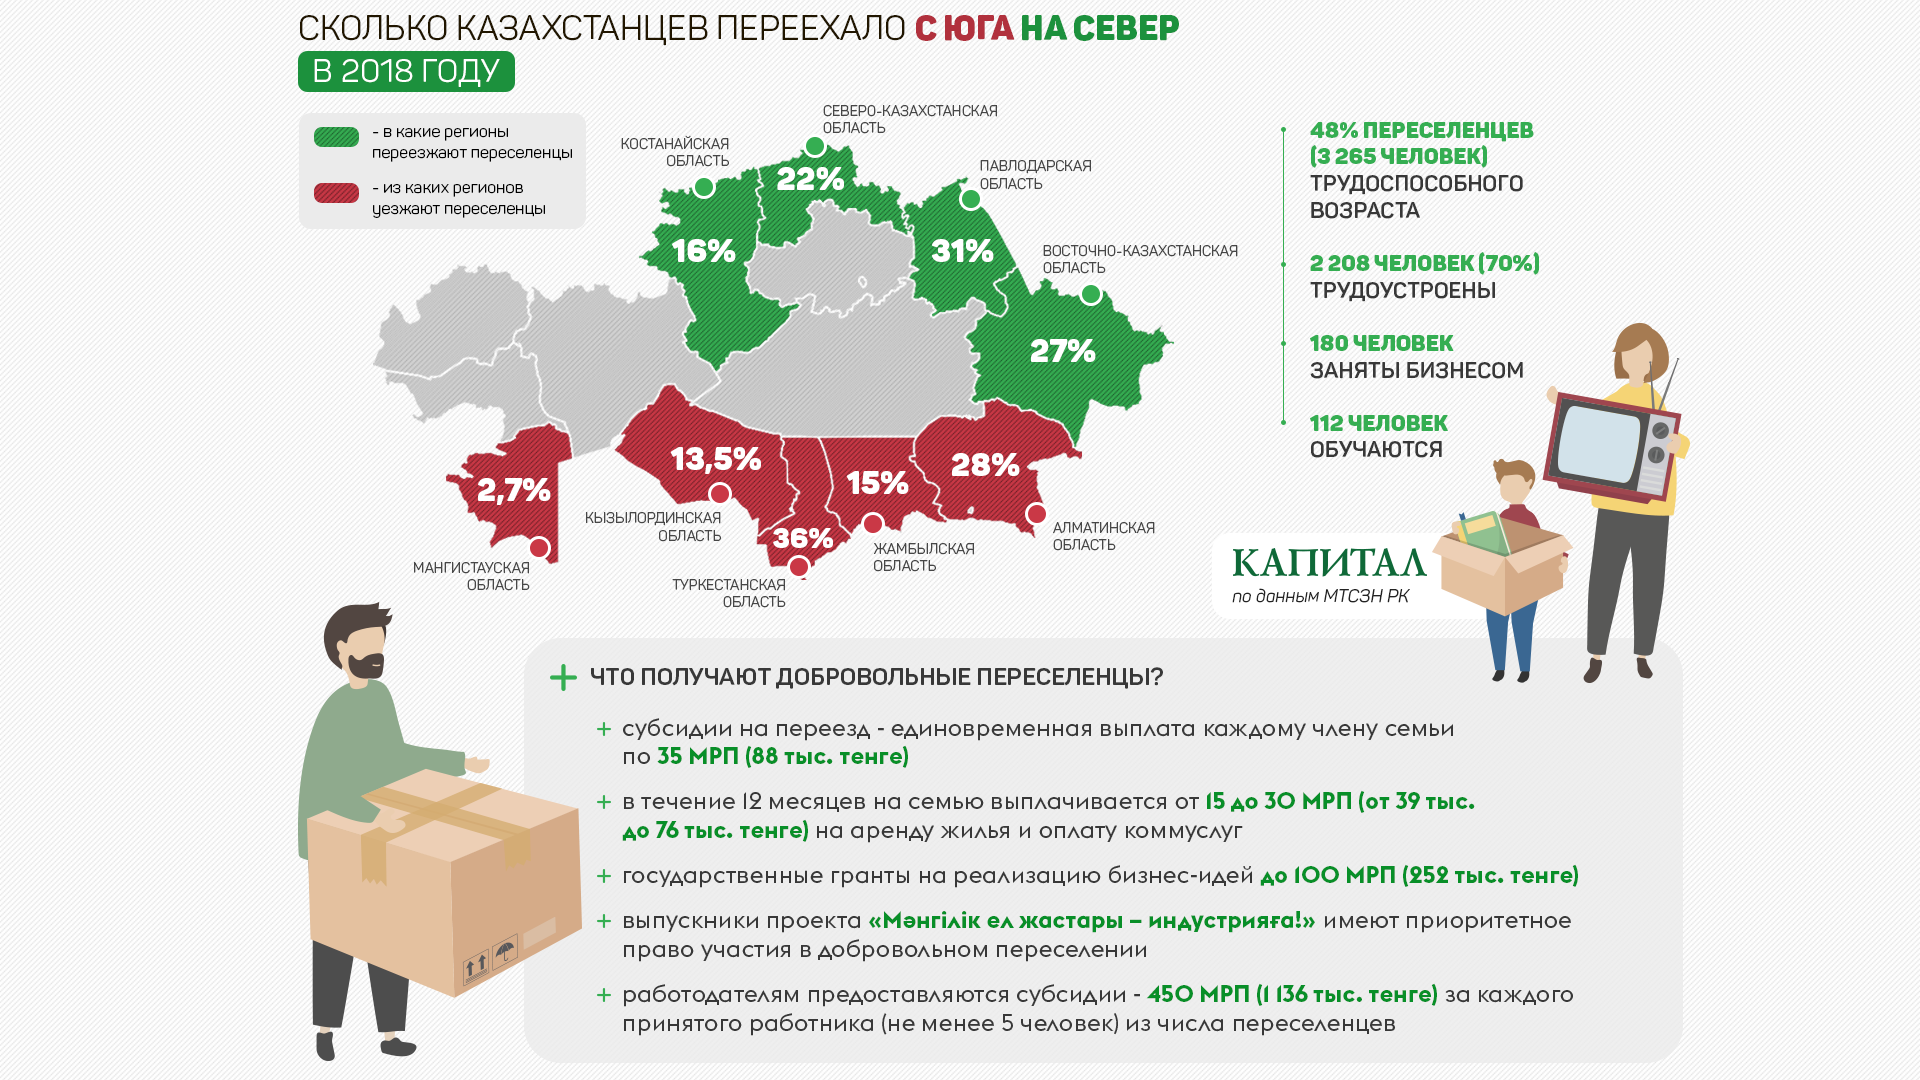 Сколько граждан рф в казахстане. Льготы для переселенцев. Программа переселения в Казахстан. Приоритетные регионы для переселения в РФ.